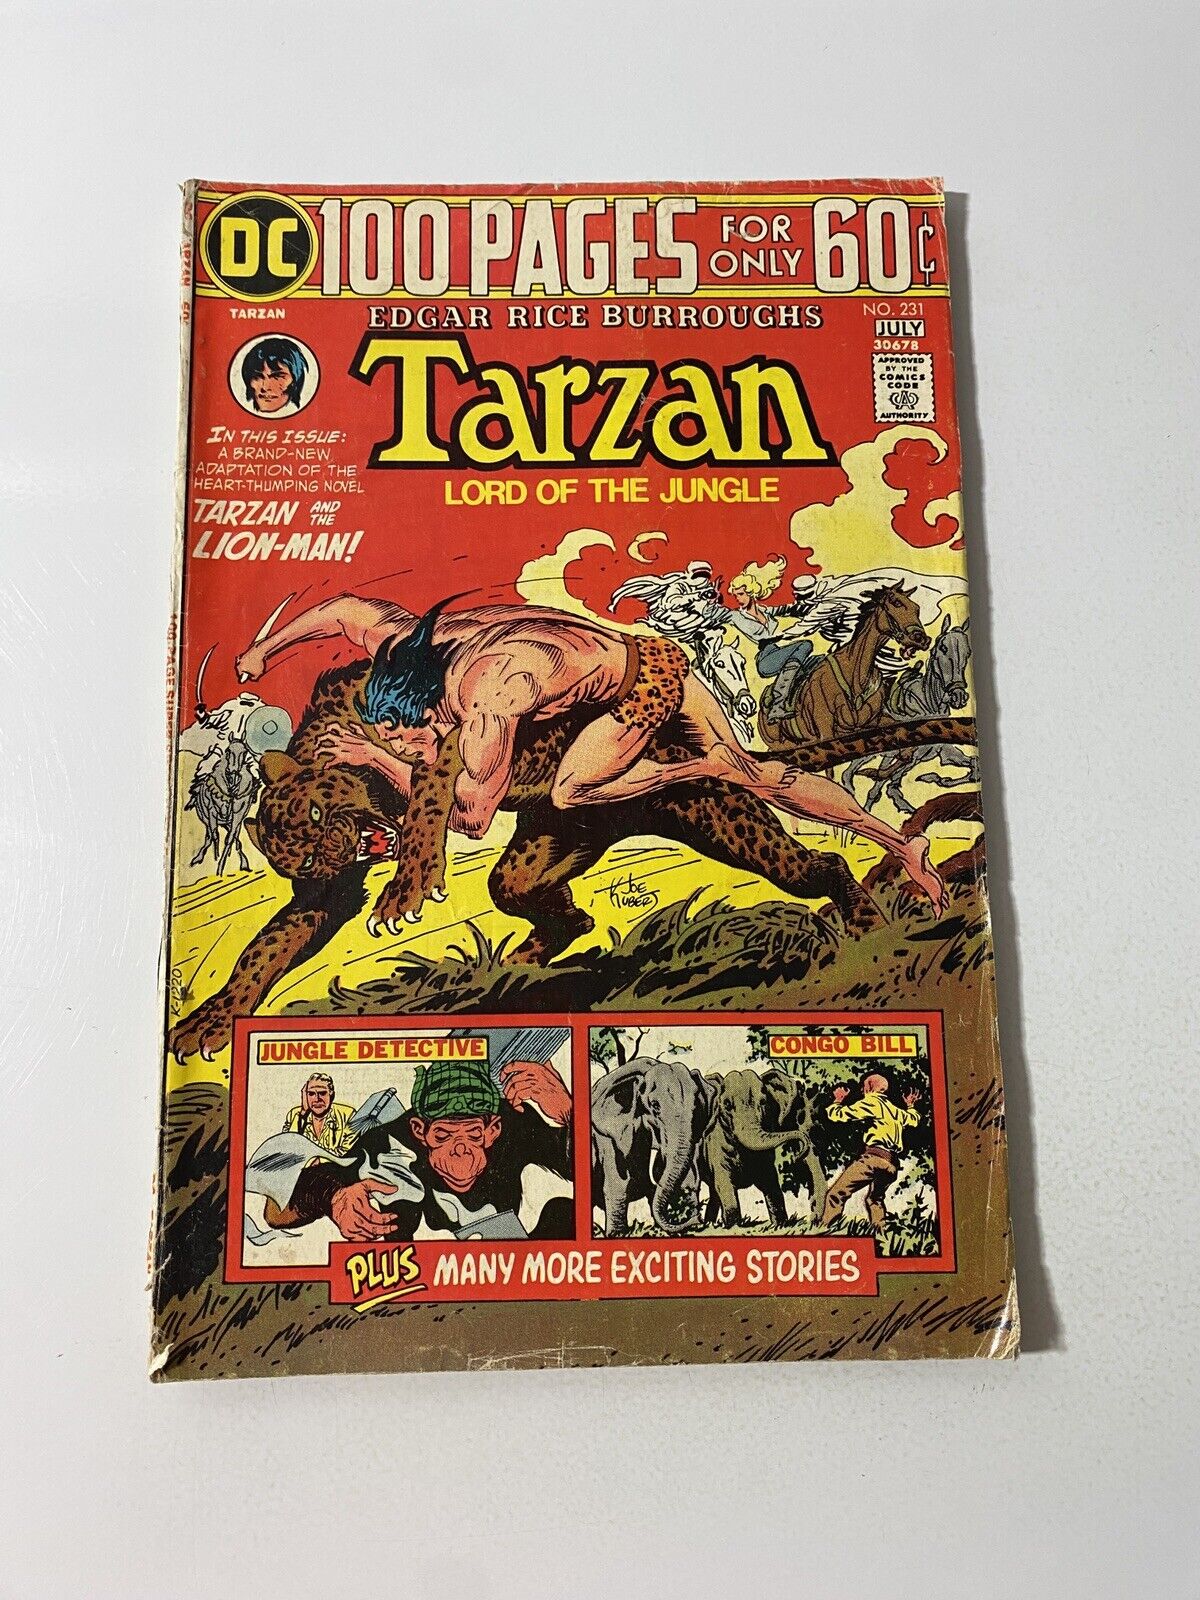 Tarzan #231 DC Comics 1975 Bronze Age 100 pages Edgar Rice Burroughs